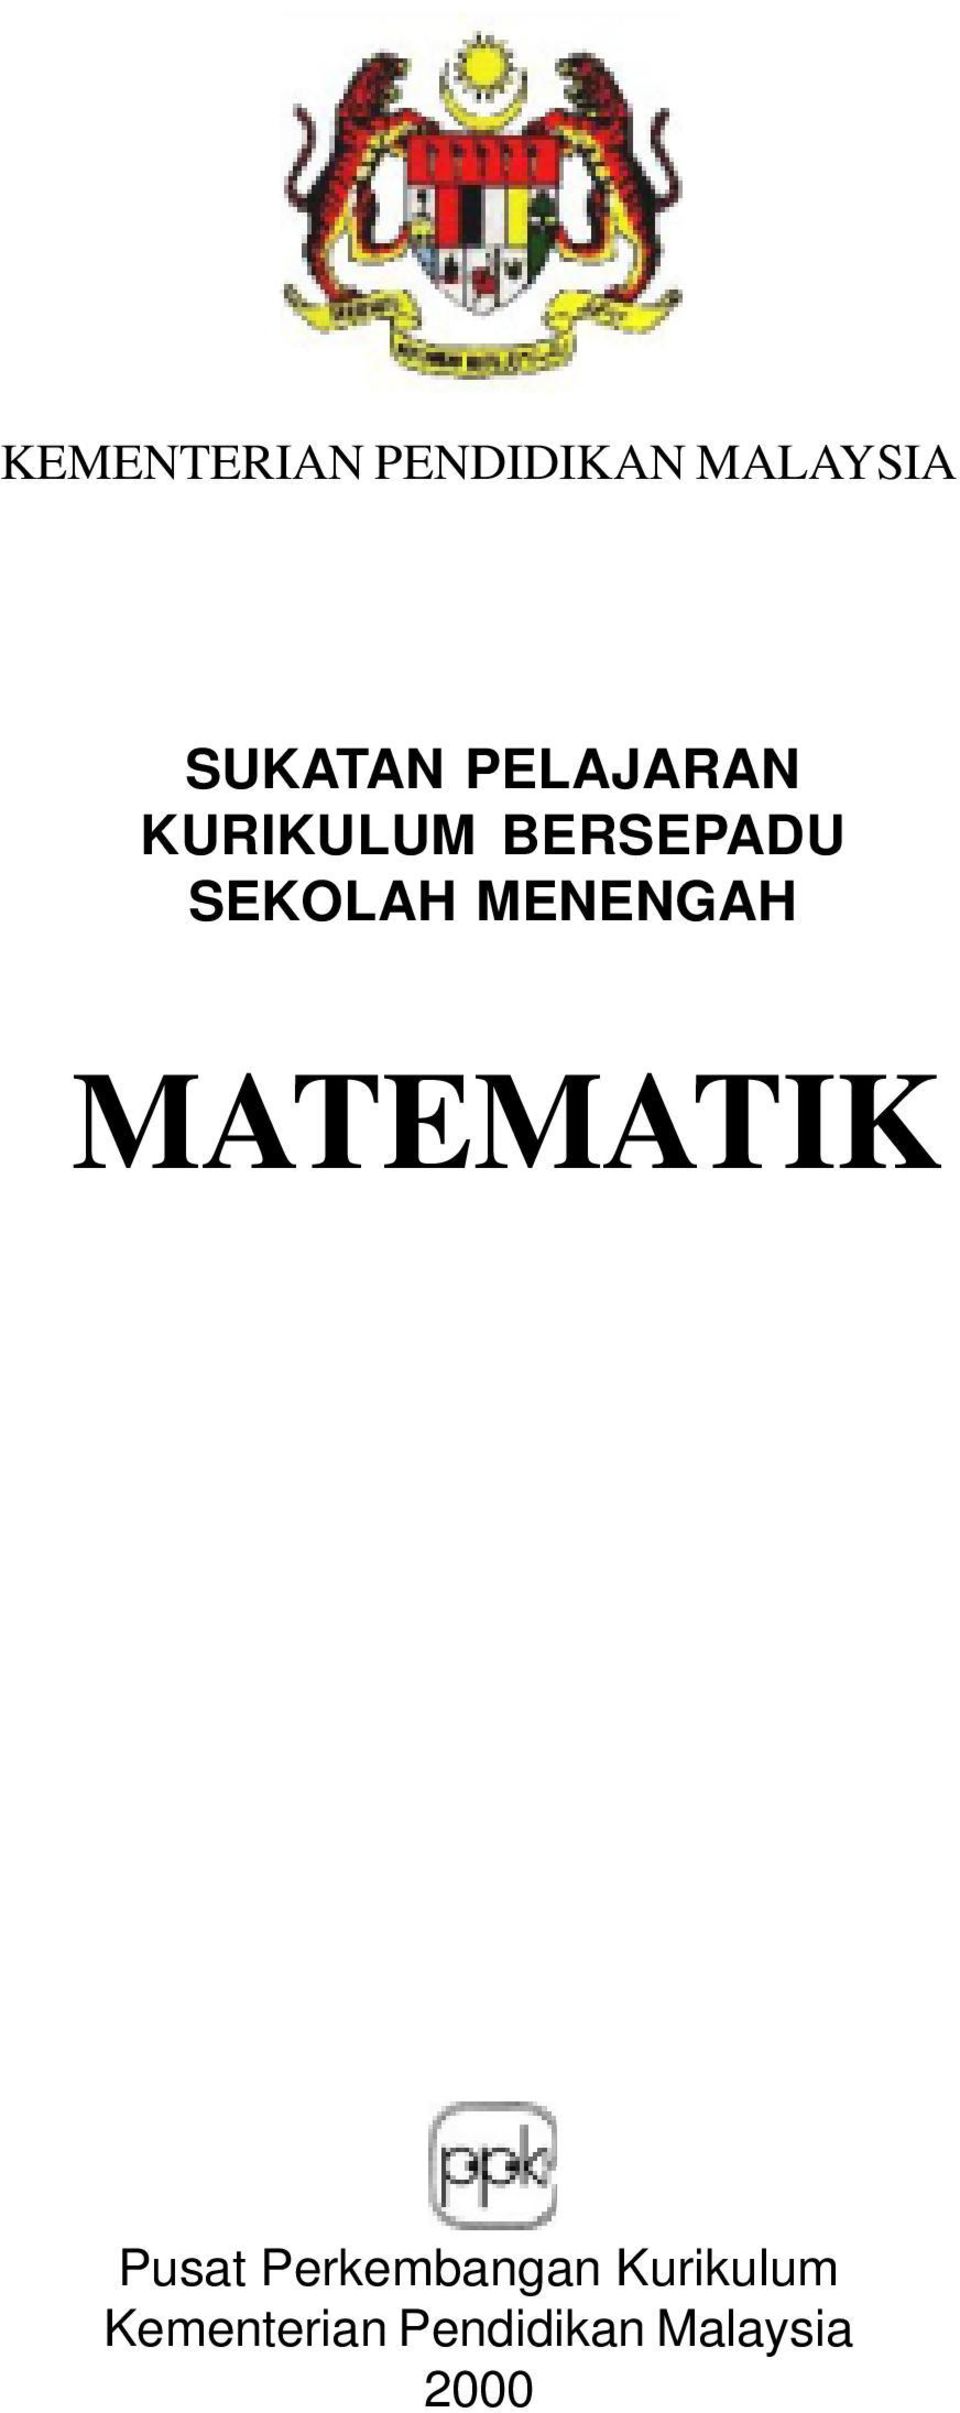 Kementerian Pendidikan Malaysia Sukatan Pelajaran Kurikulum Bersepadu Sekolah Menengah Matematik Pdf